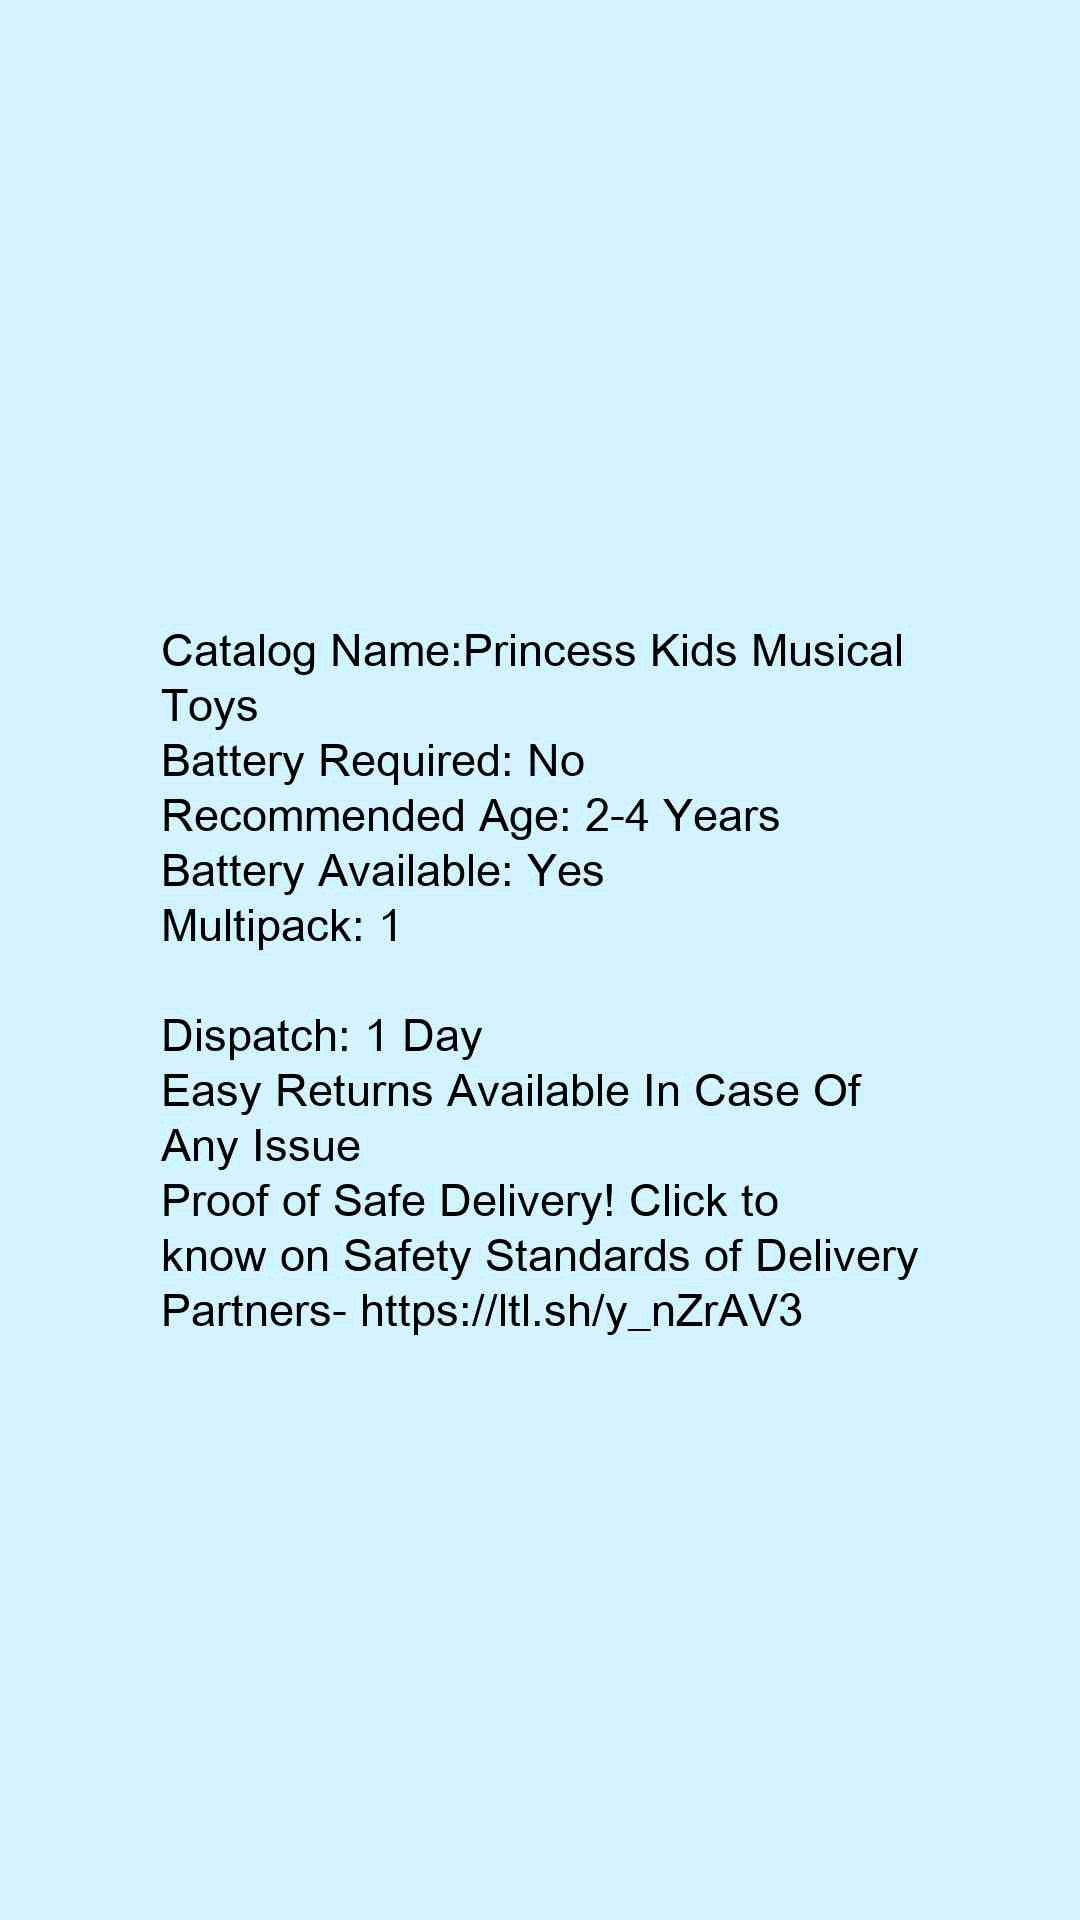 Princess Kids Musical Toys - Faritha